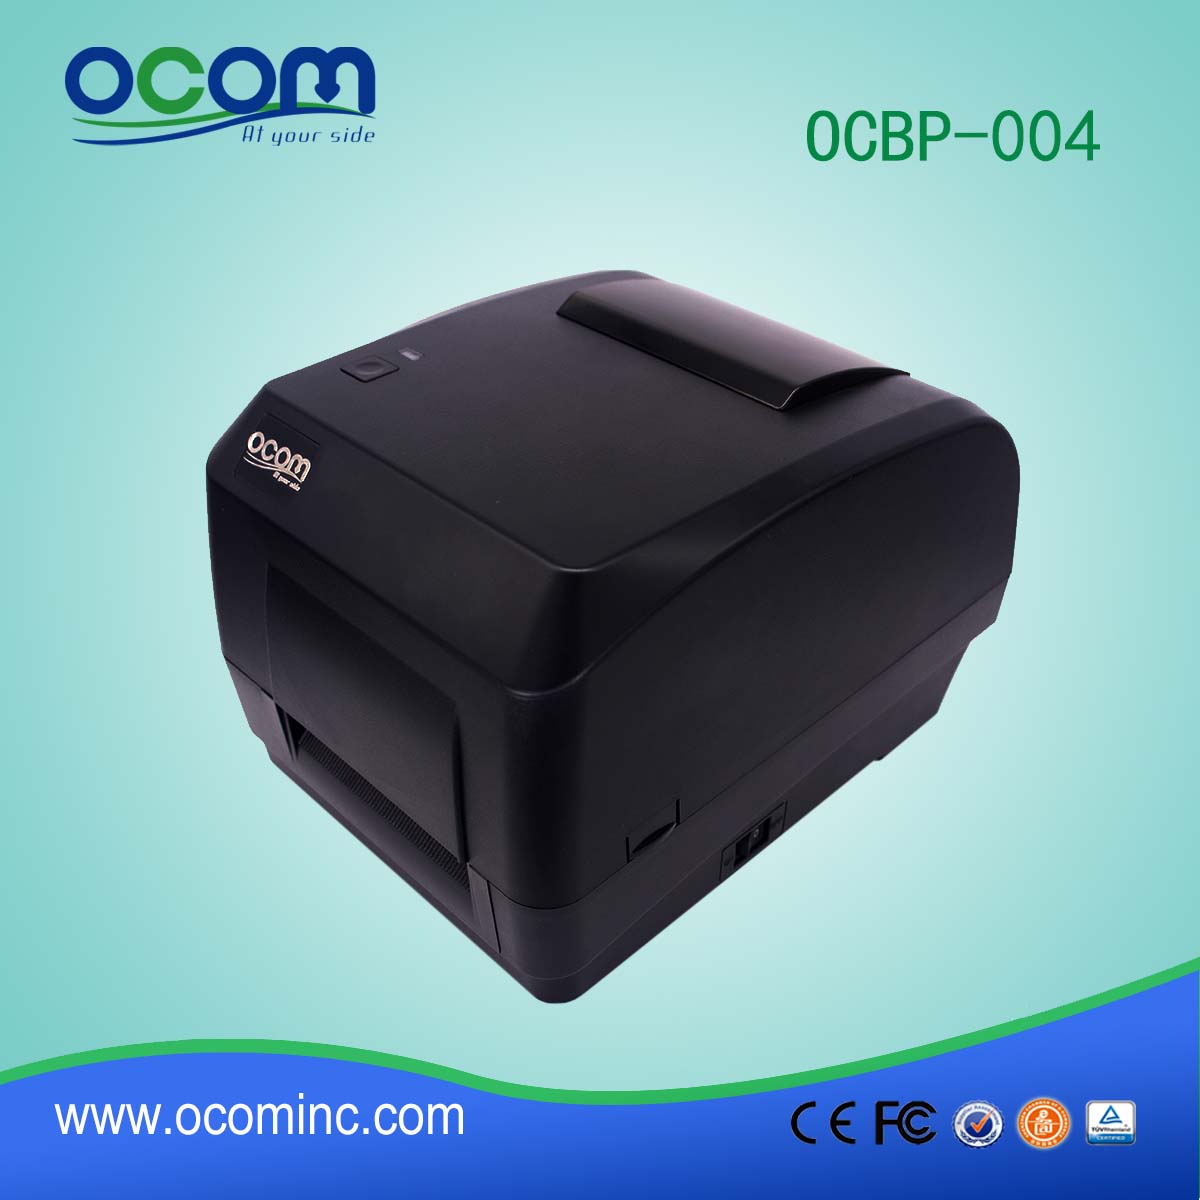 Νέος εκτυπωτής ετικετών θερμικού εκτυπωτή OCBP-004A-U